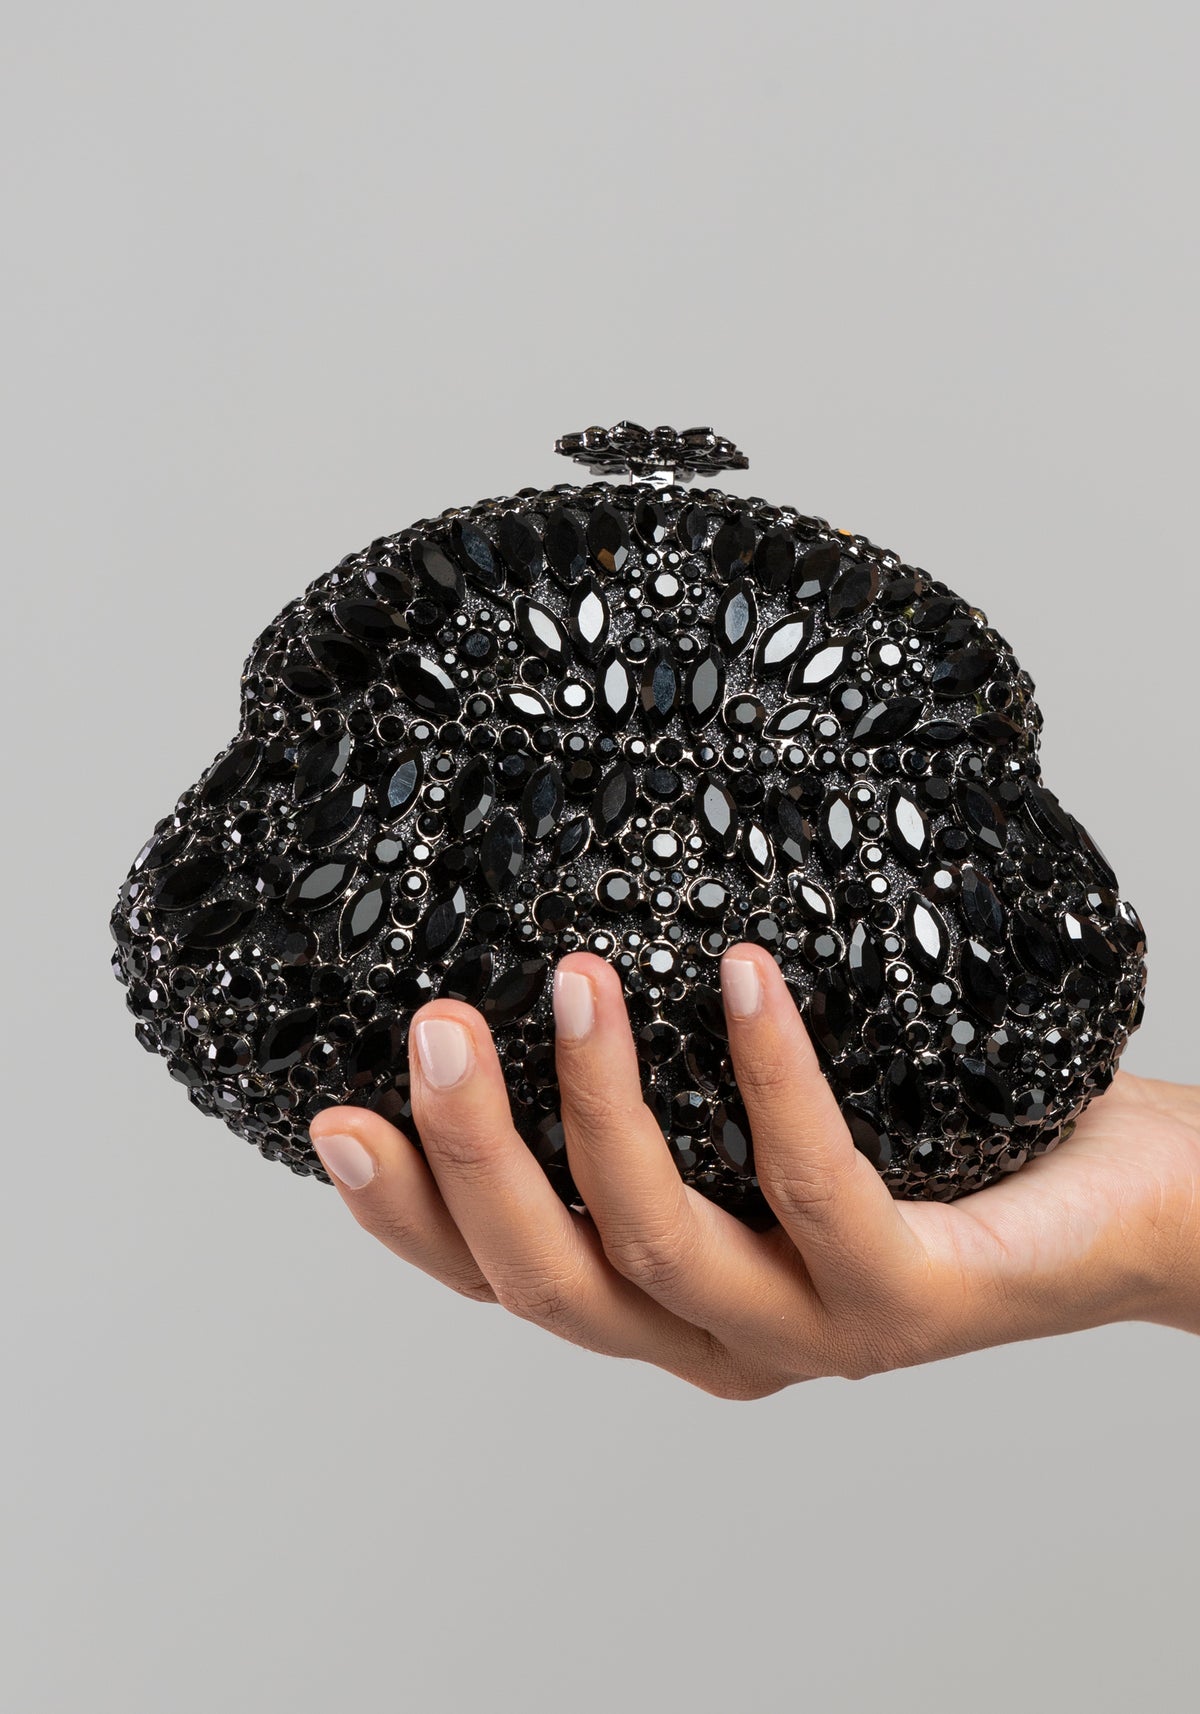 Black gemstone ornate handbag